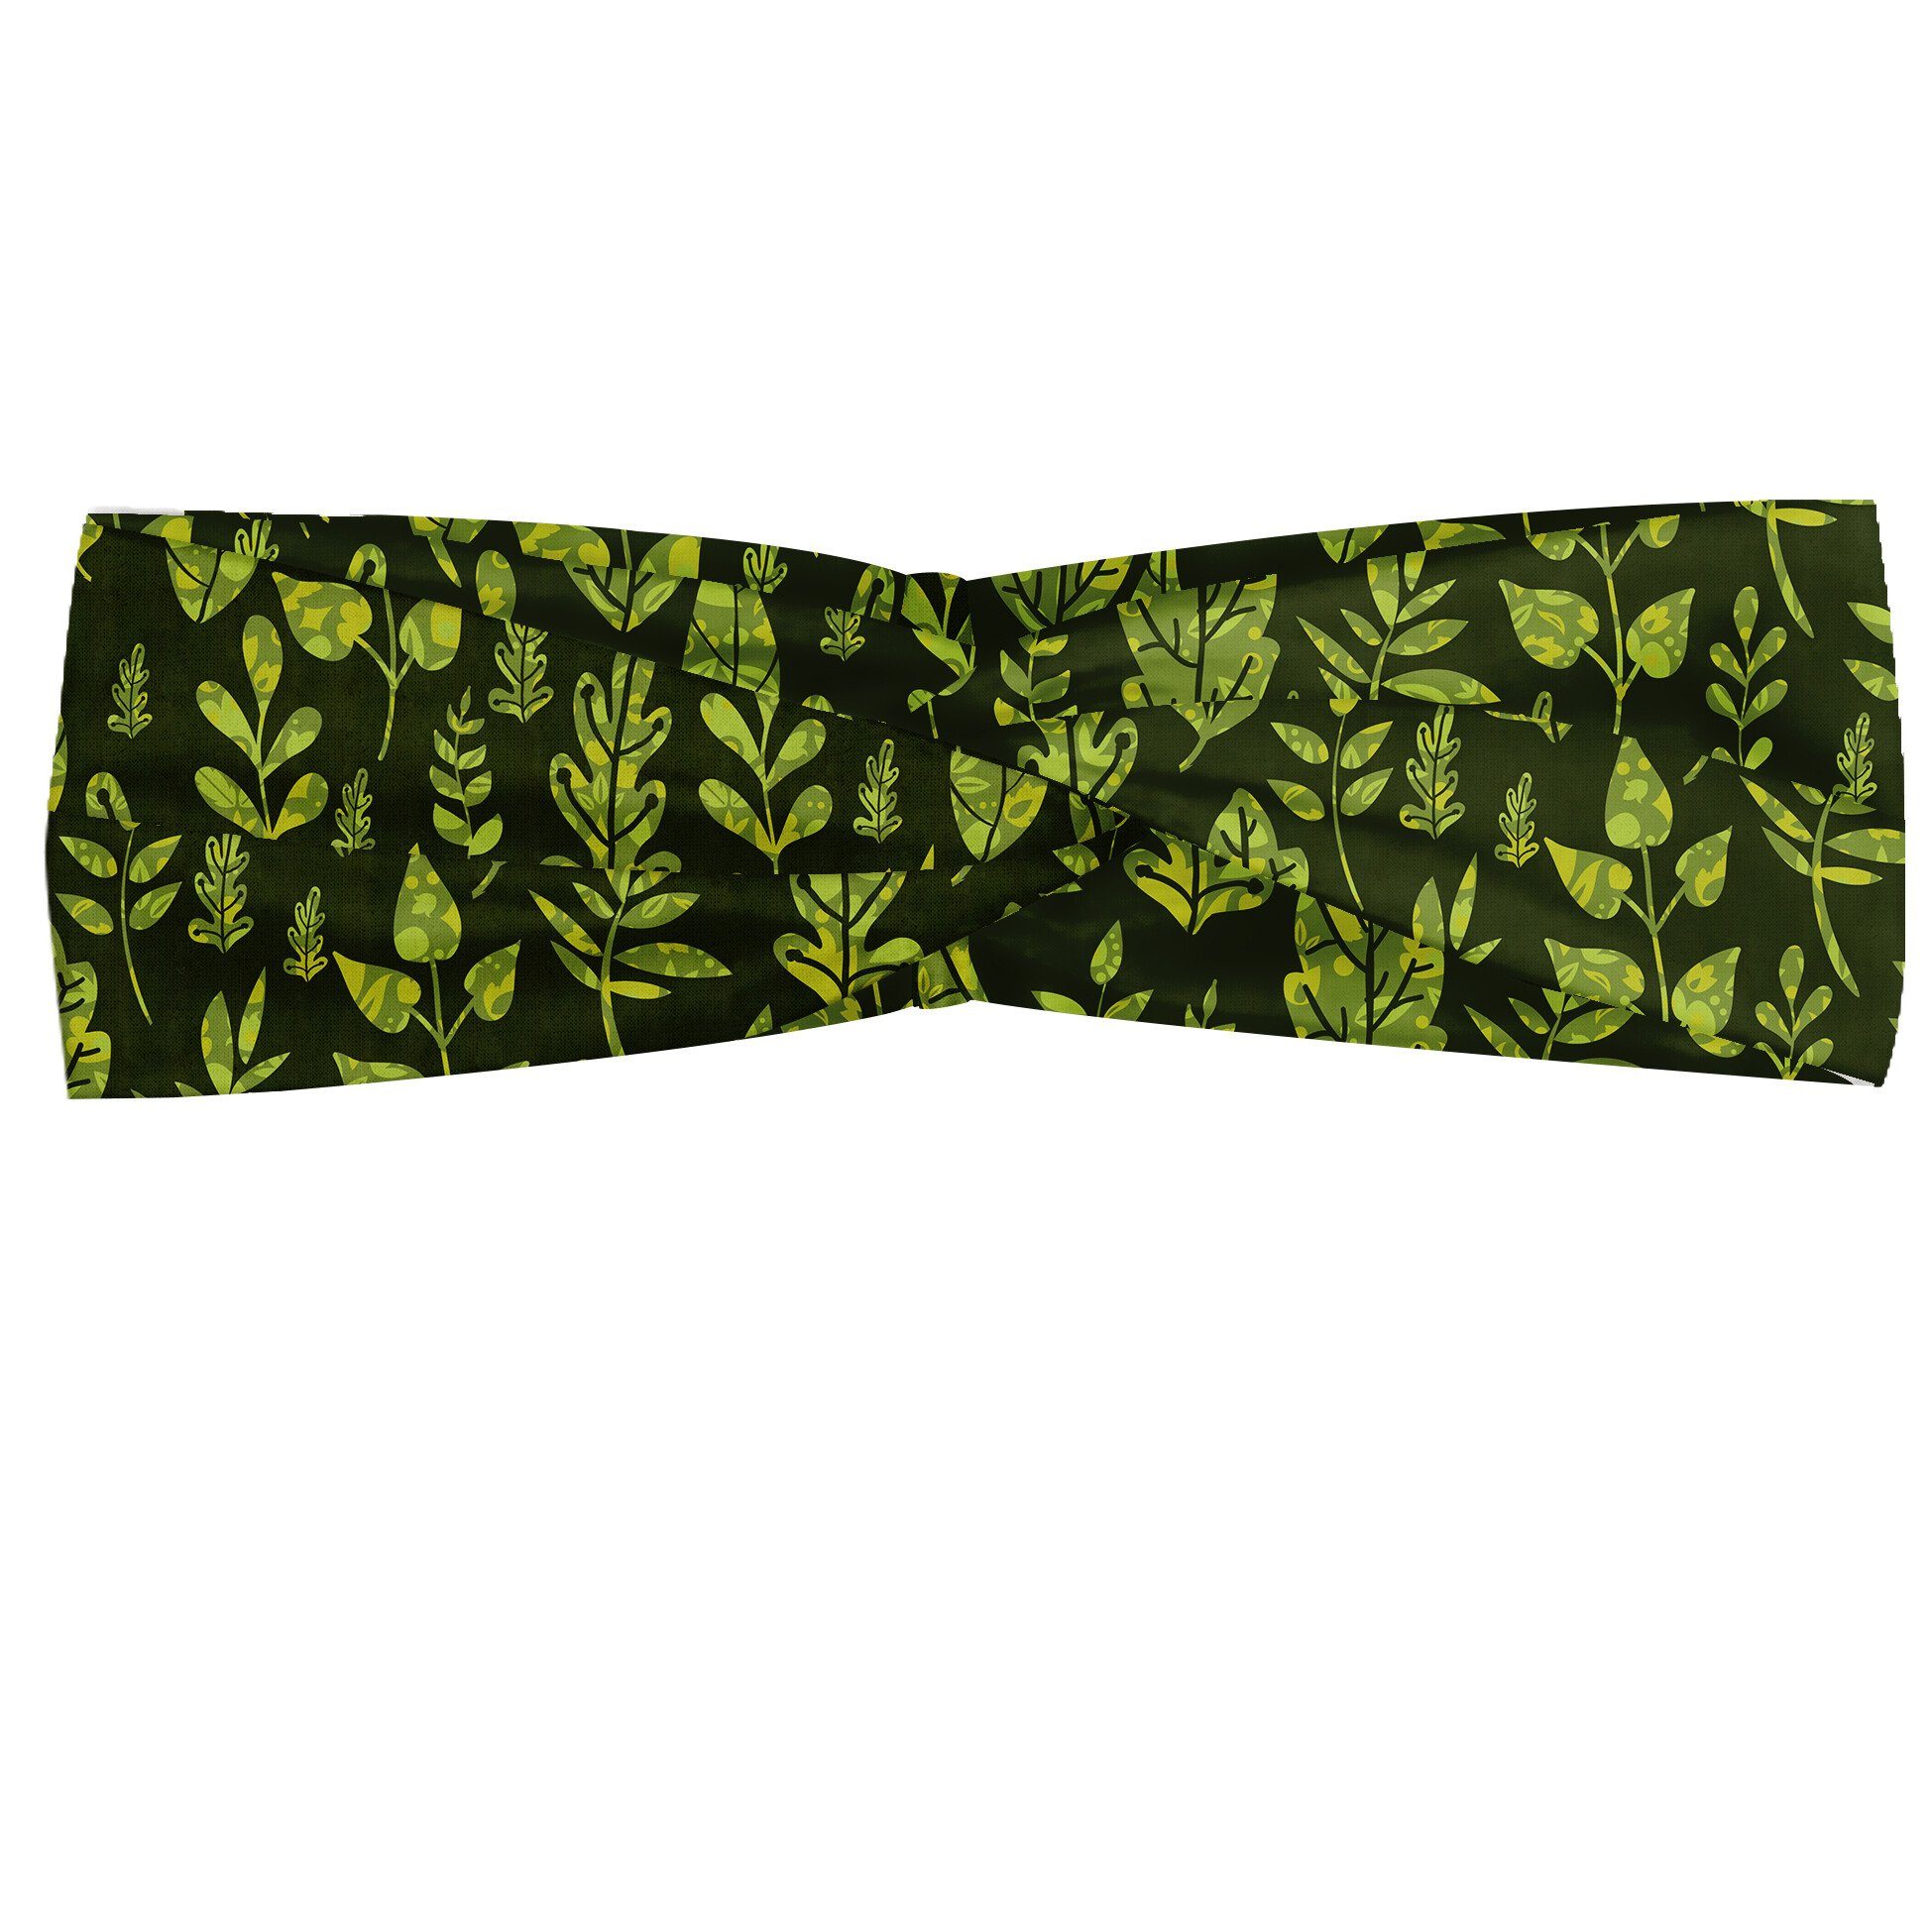 Abakuhaus Stirnband Elastisch und Angenehme alltags accessories Salbei Patterned Green Leaves | Stirnbänder